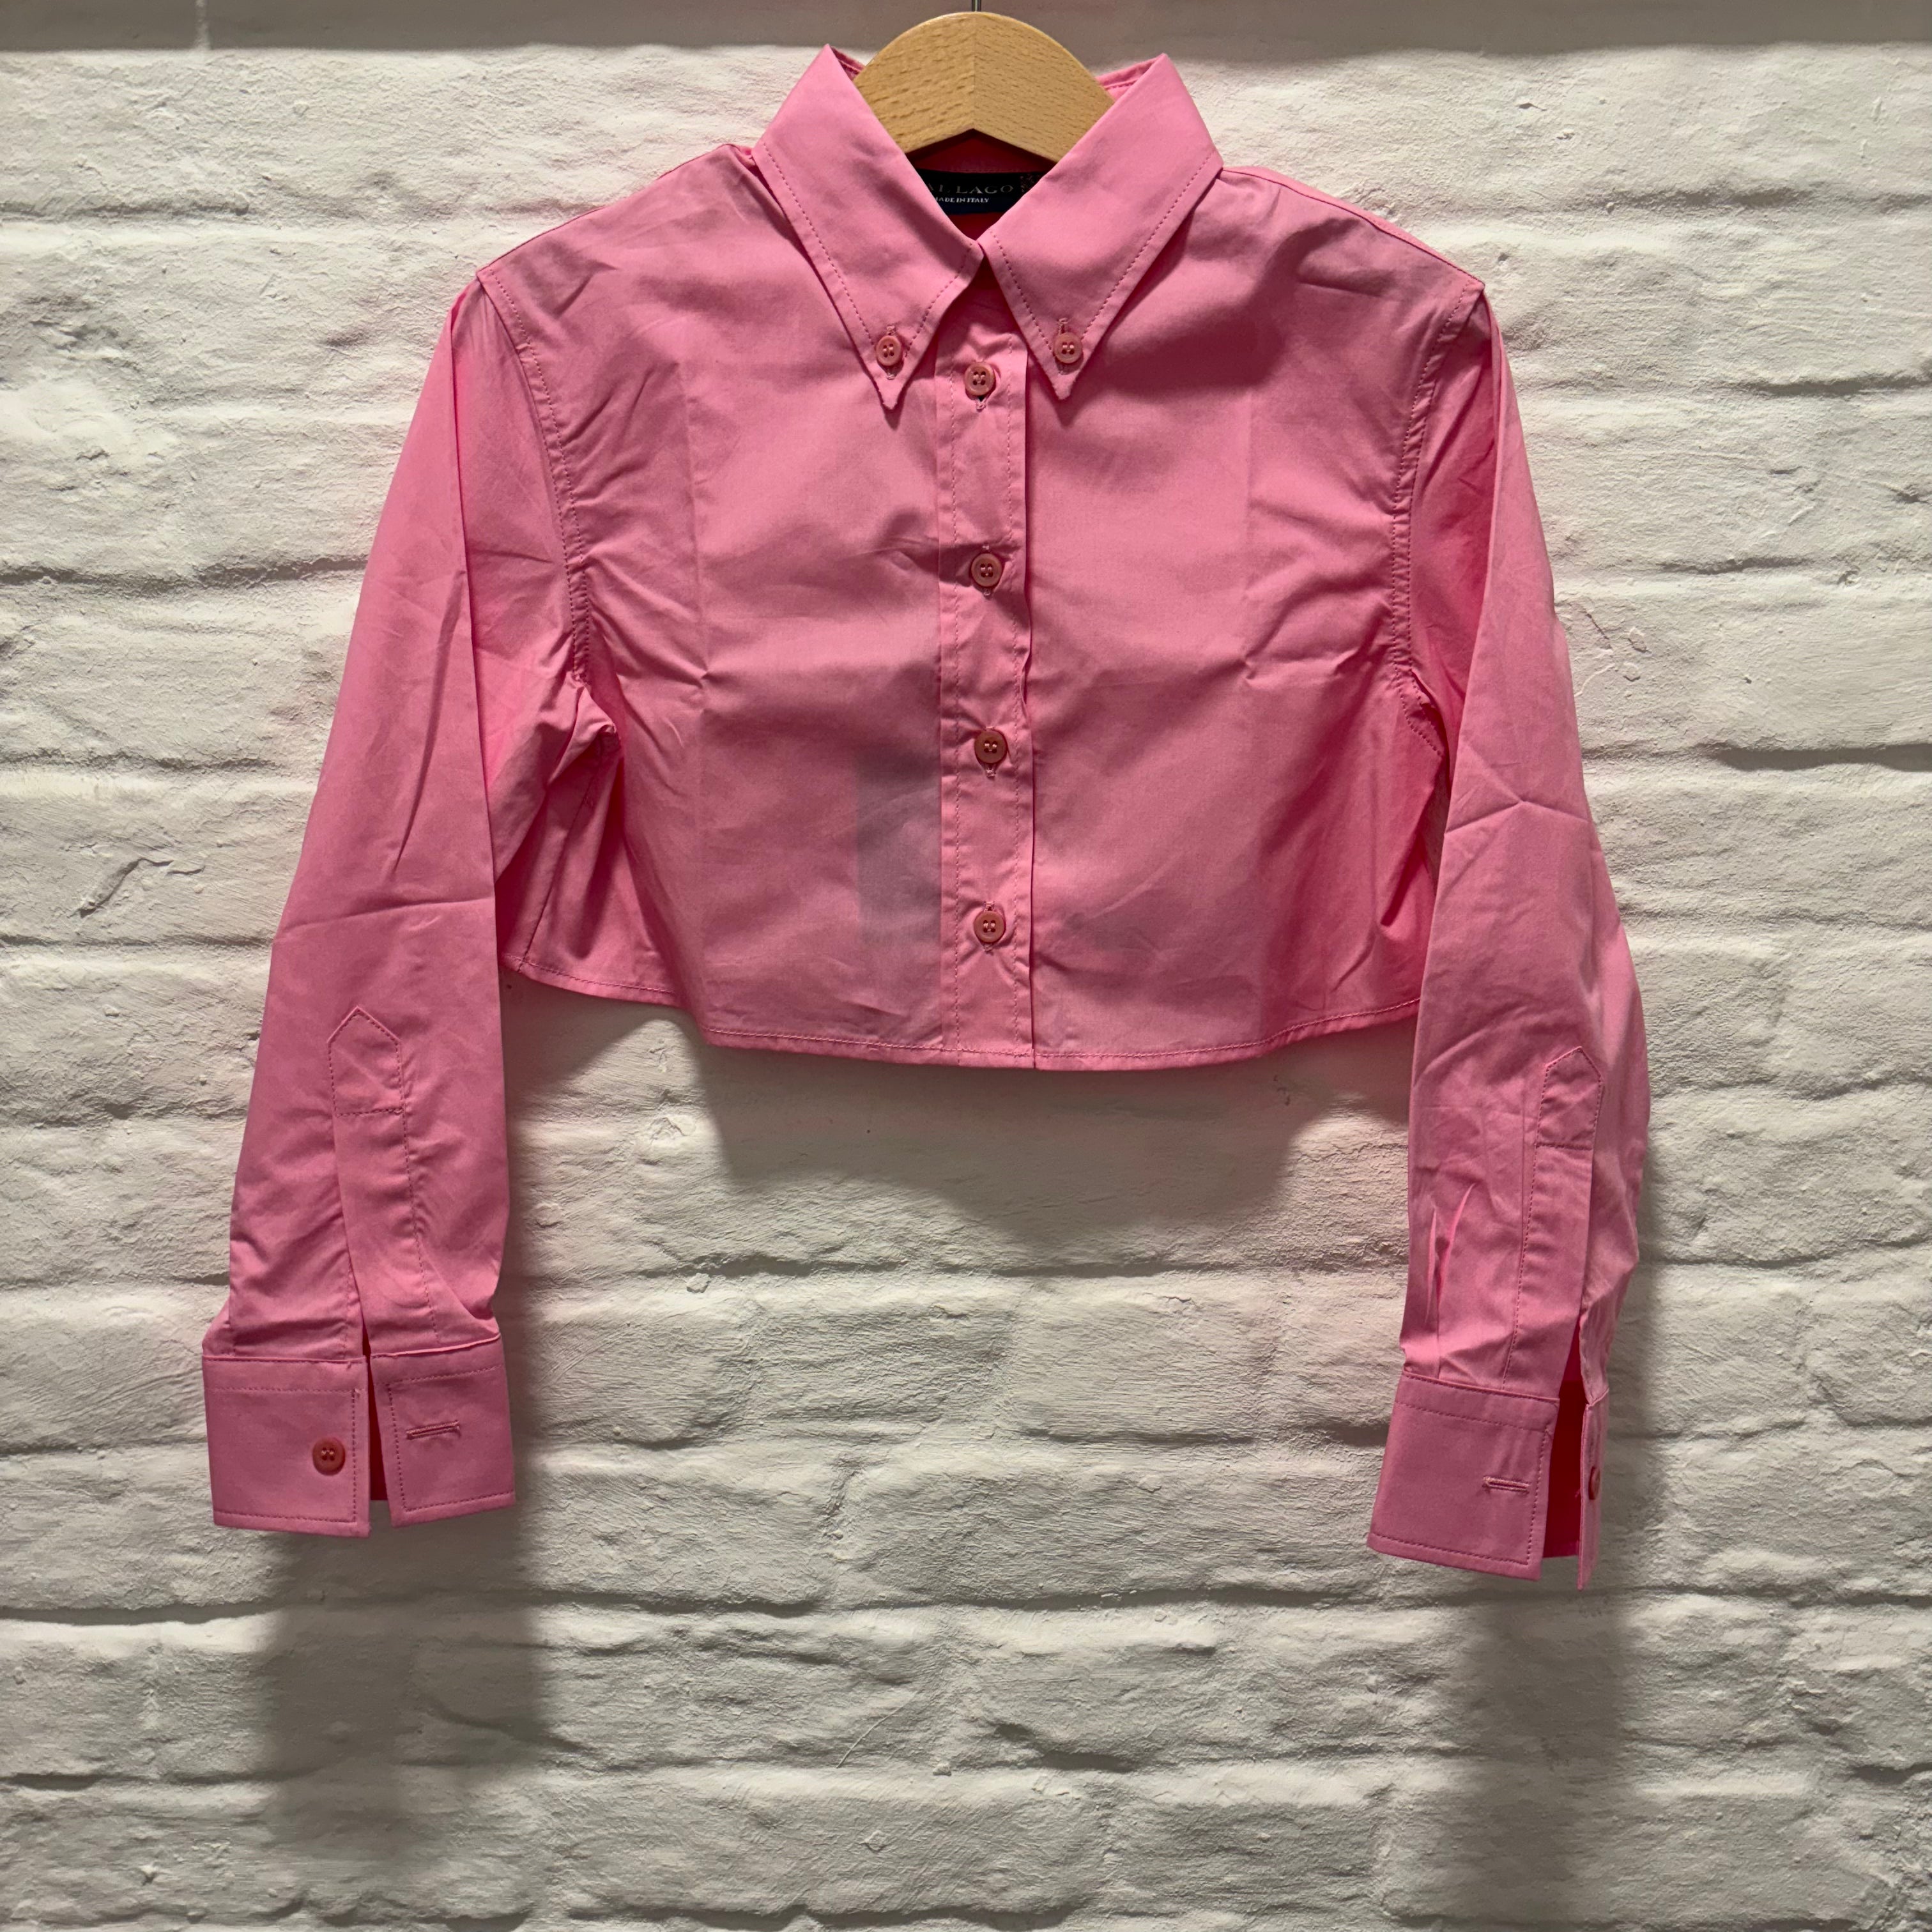 Dal Lago - kika crop shirt - pink